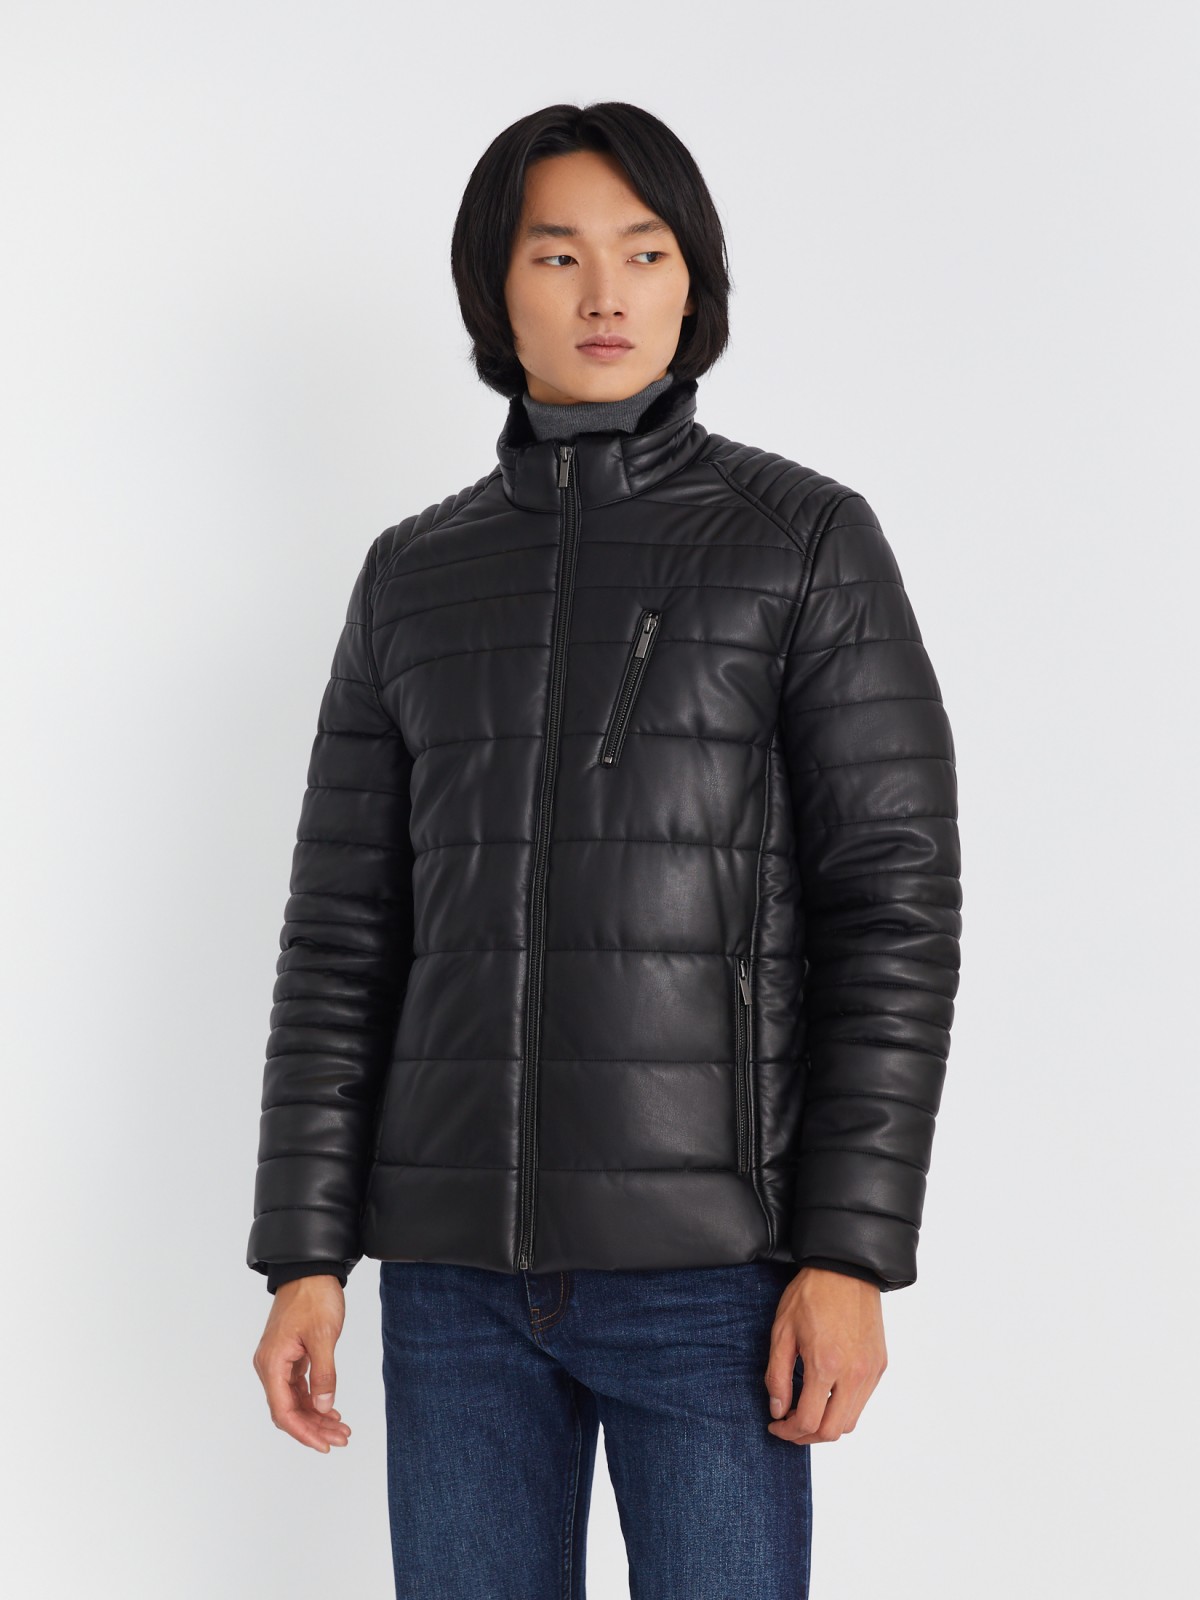 Тёплая стёганая куртка из экокожи на синтепоне с воротником-стойкой zolla 013345150014, цвет черный, размер S - фото 3